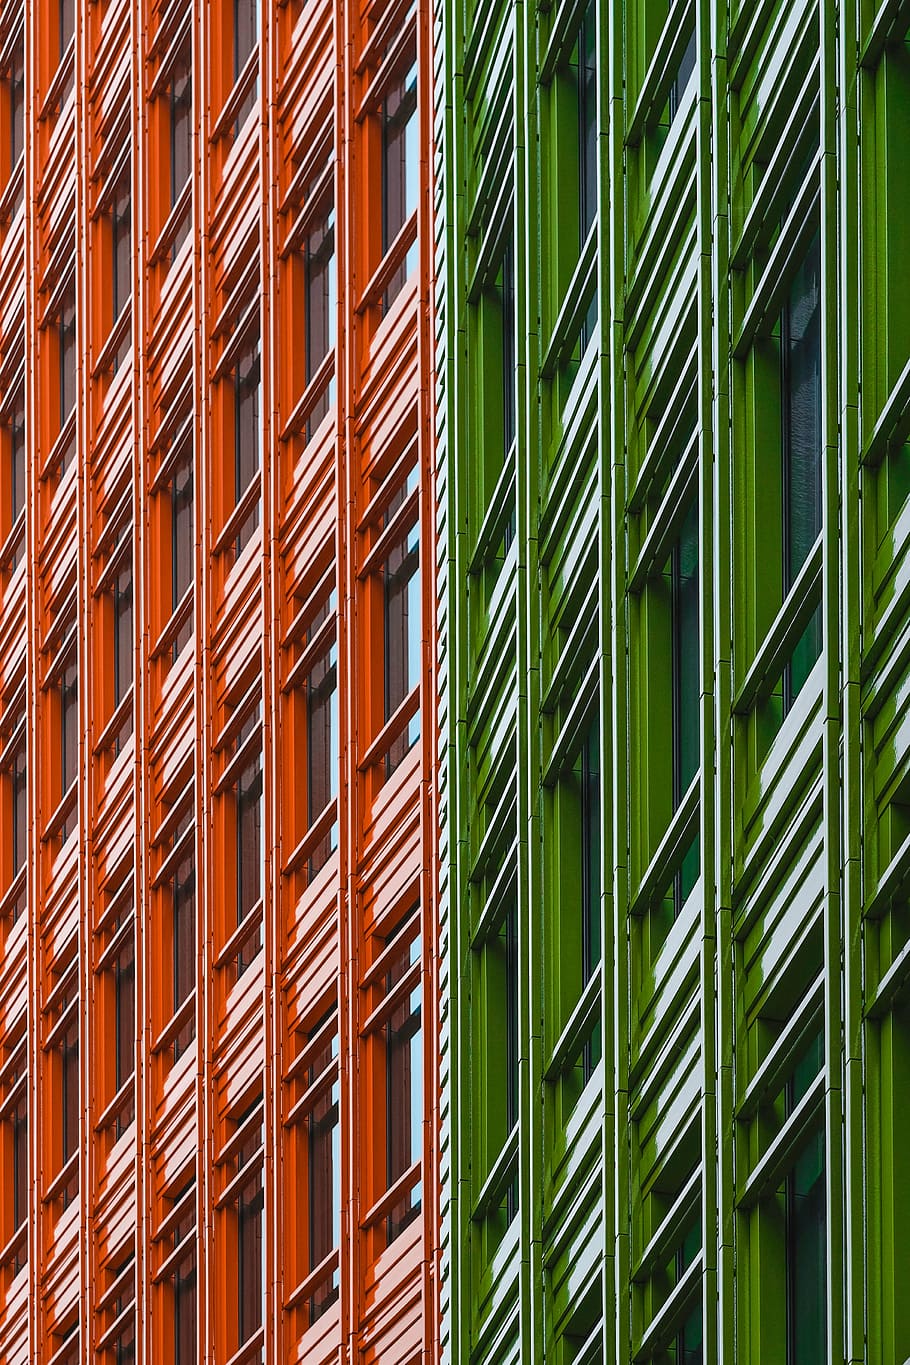 hijau, oranye, fasad bangunan logam, arsitektur, bangunan, infrastruktur, fasad, pola, struktur yang dibangun, eksterior bangunan